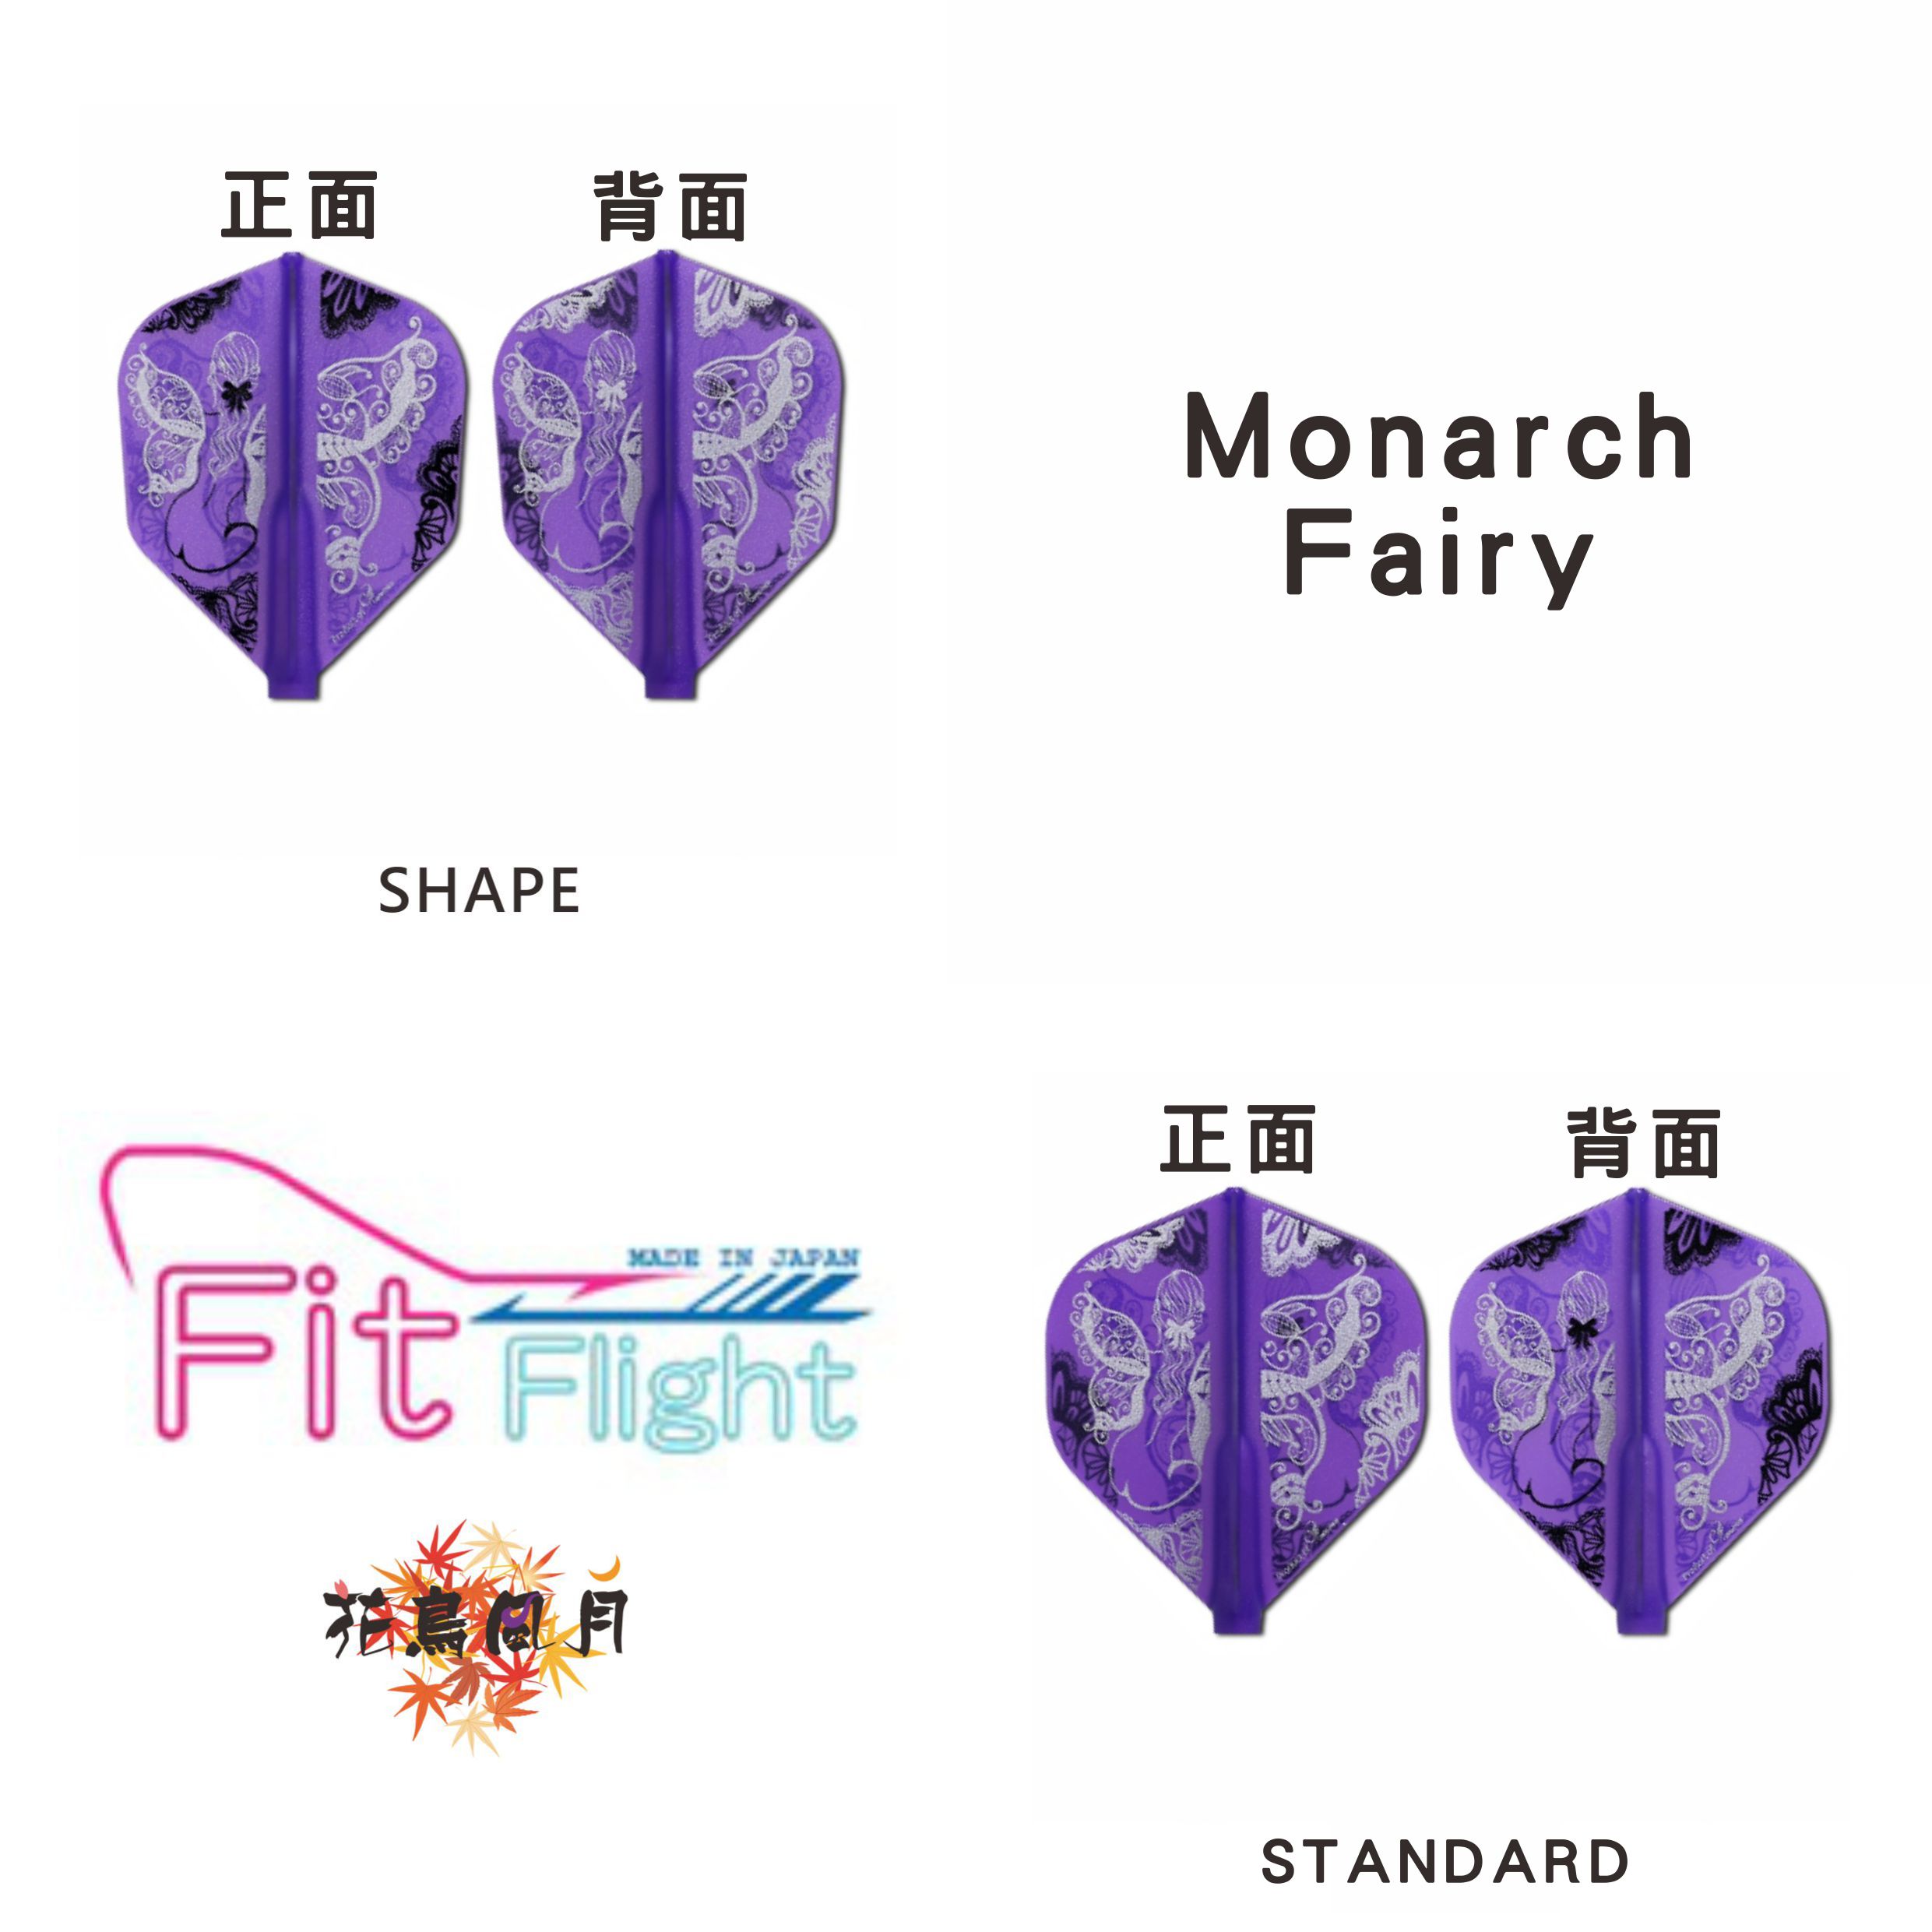 Fit-Flight-Printed-Series-Monarch-Fairy.jpg